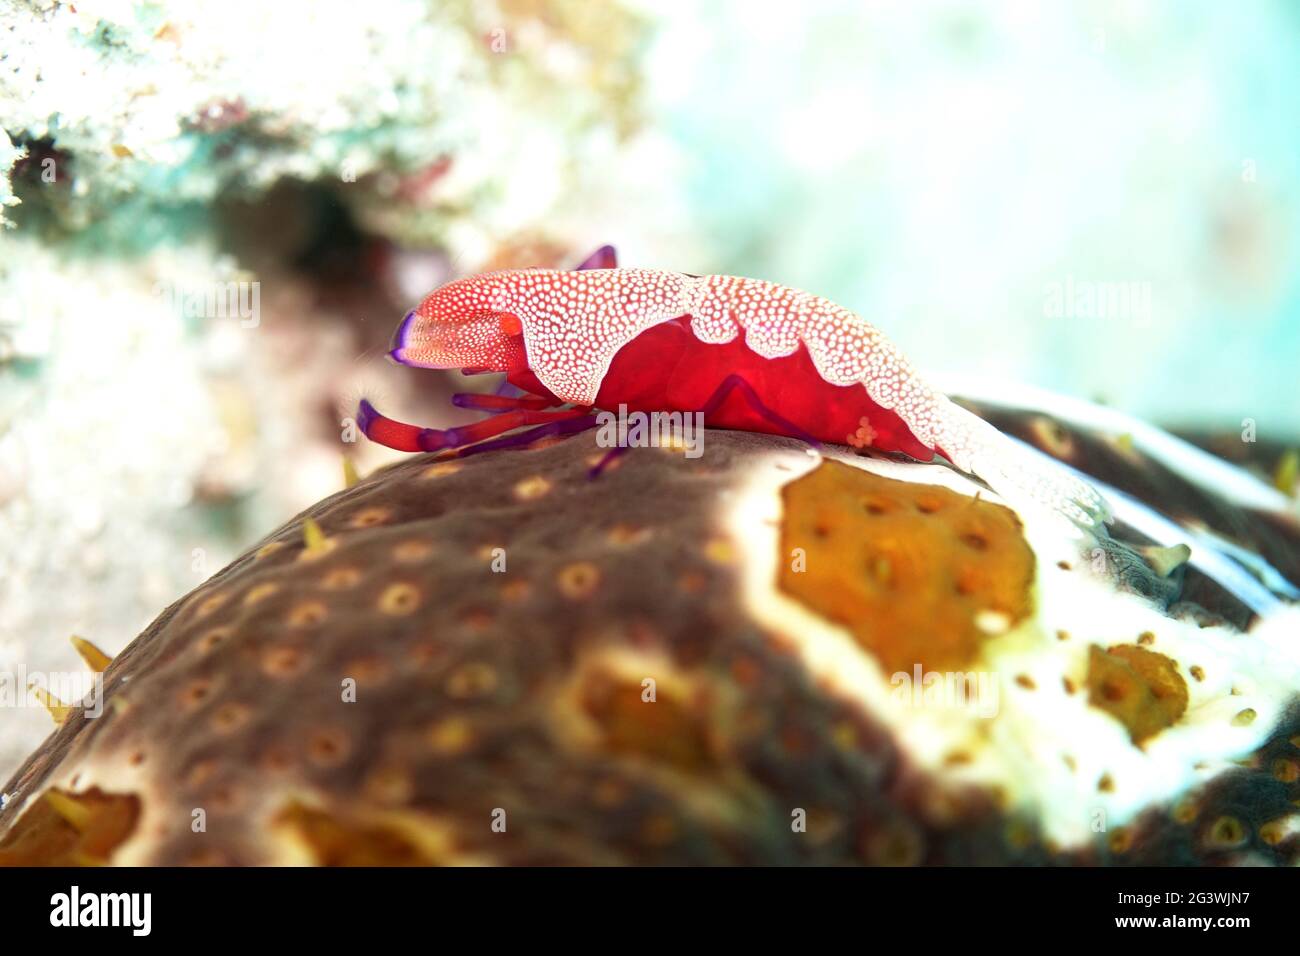 Emperor Shrimp on a leopard sea cucumber Stock Photo